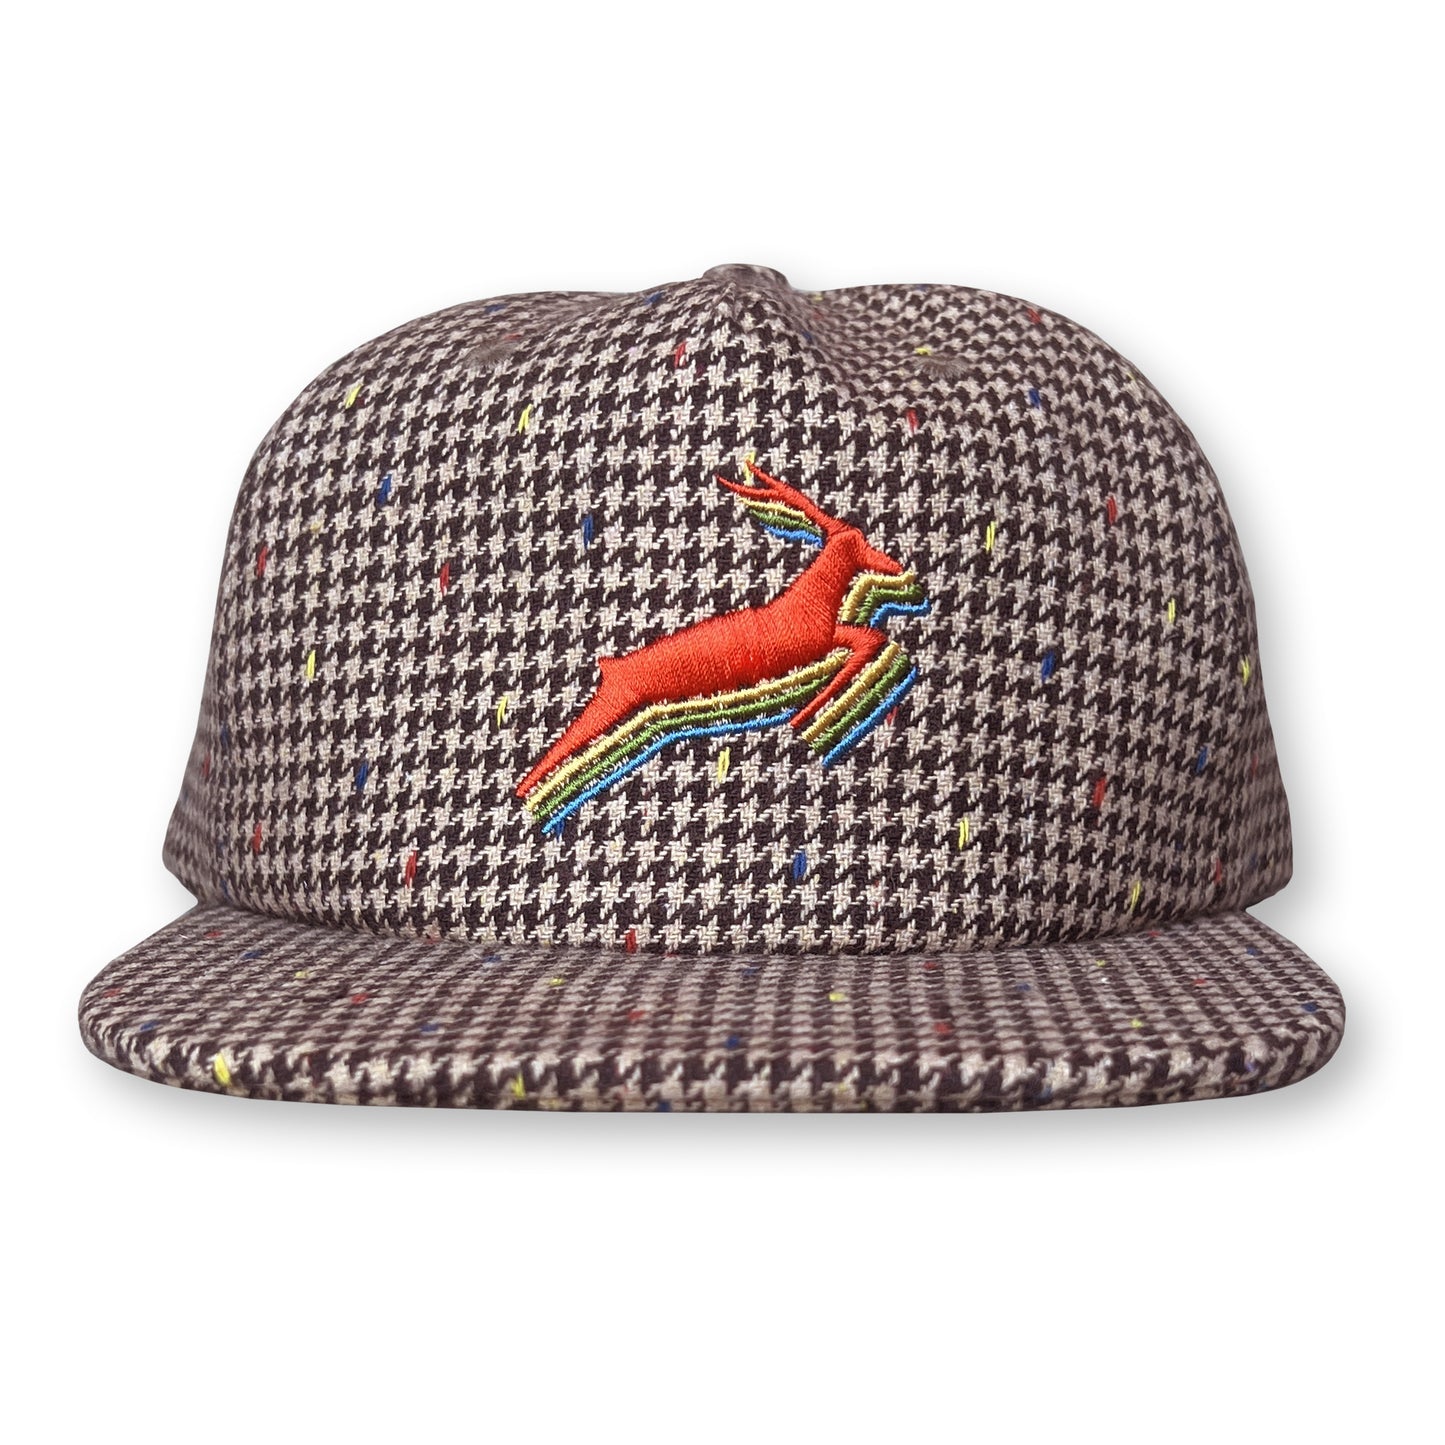 Antelope Sherlock Hat / Rocky Road Sprinkle Houndstooth Wool with Navel Antelope